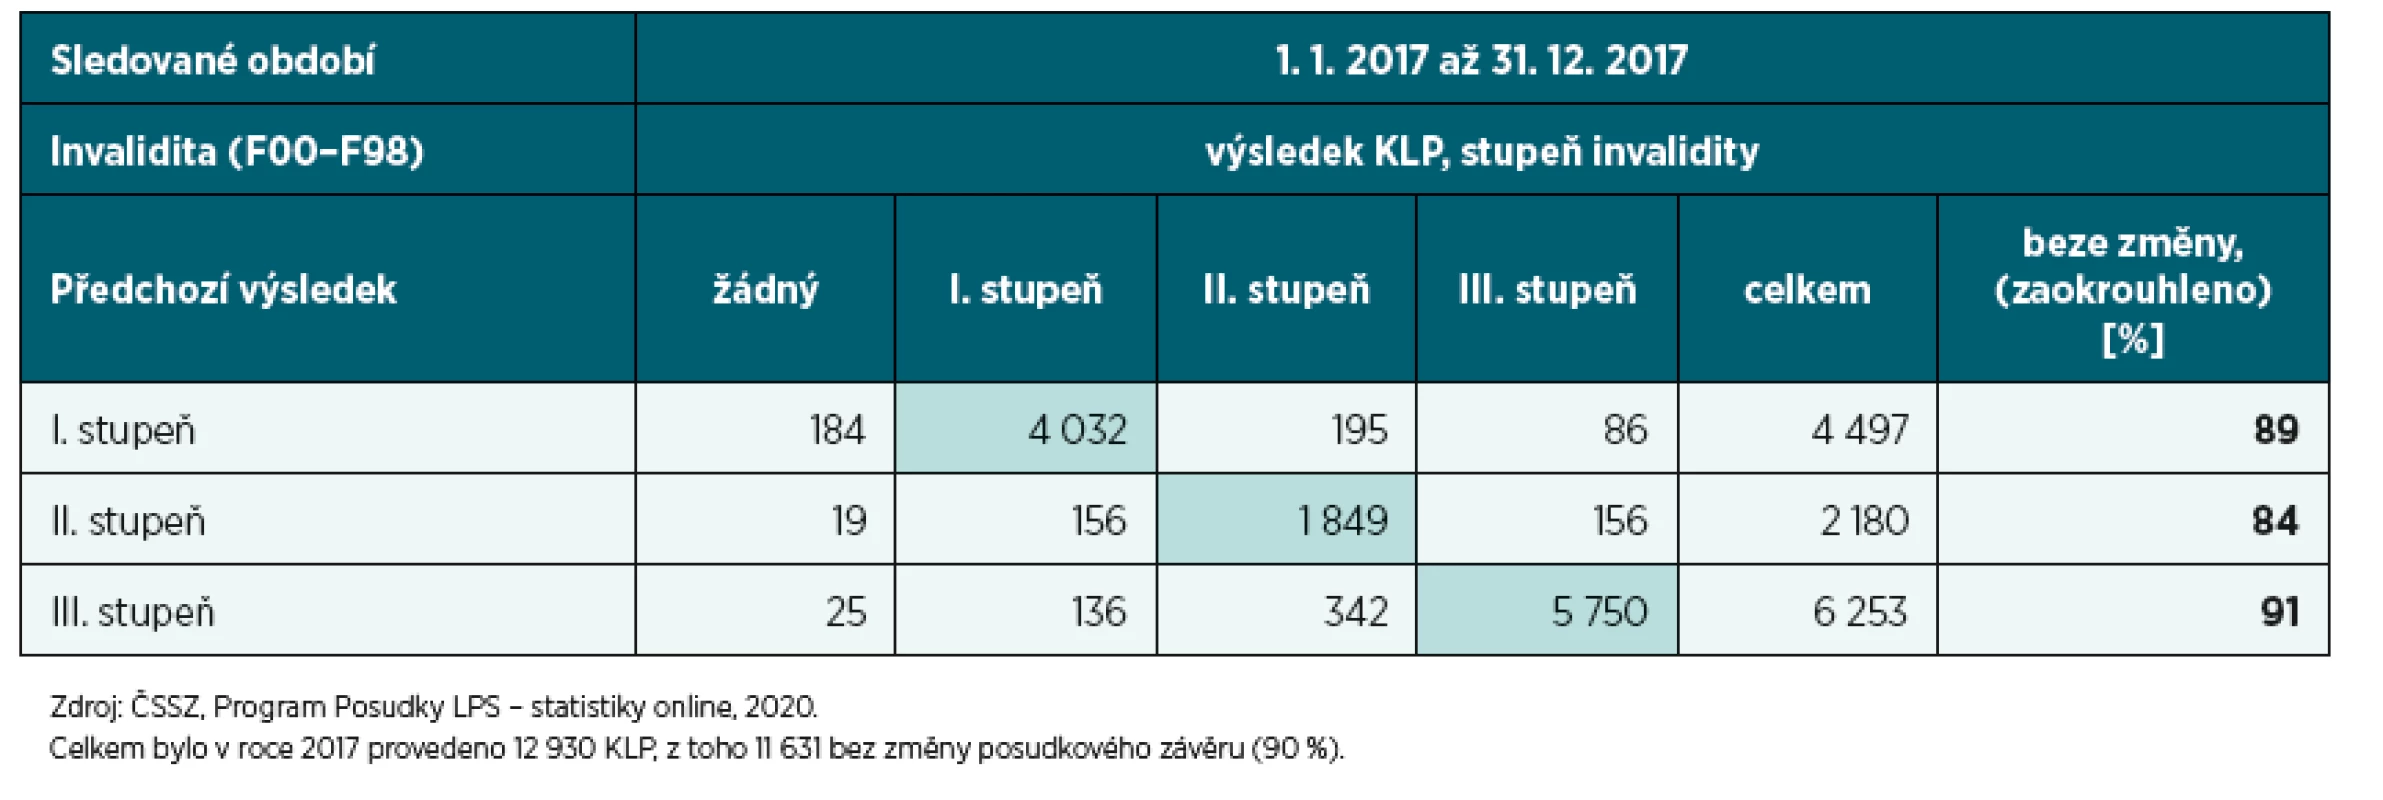 Počty KLP invalidity a jejich výsledky u všech psychiatrických diagnóz v roce 2017 podle stupně invalidity